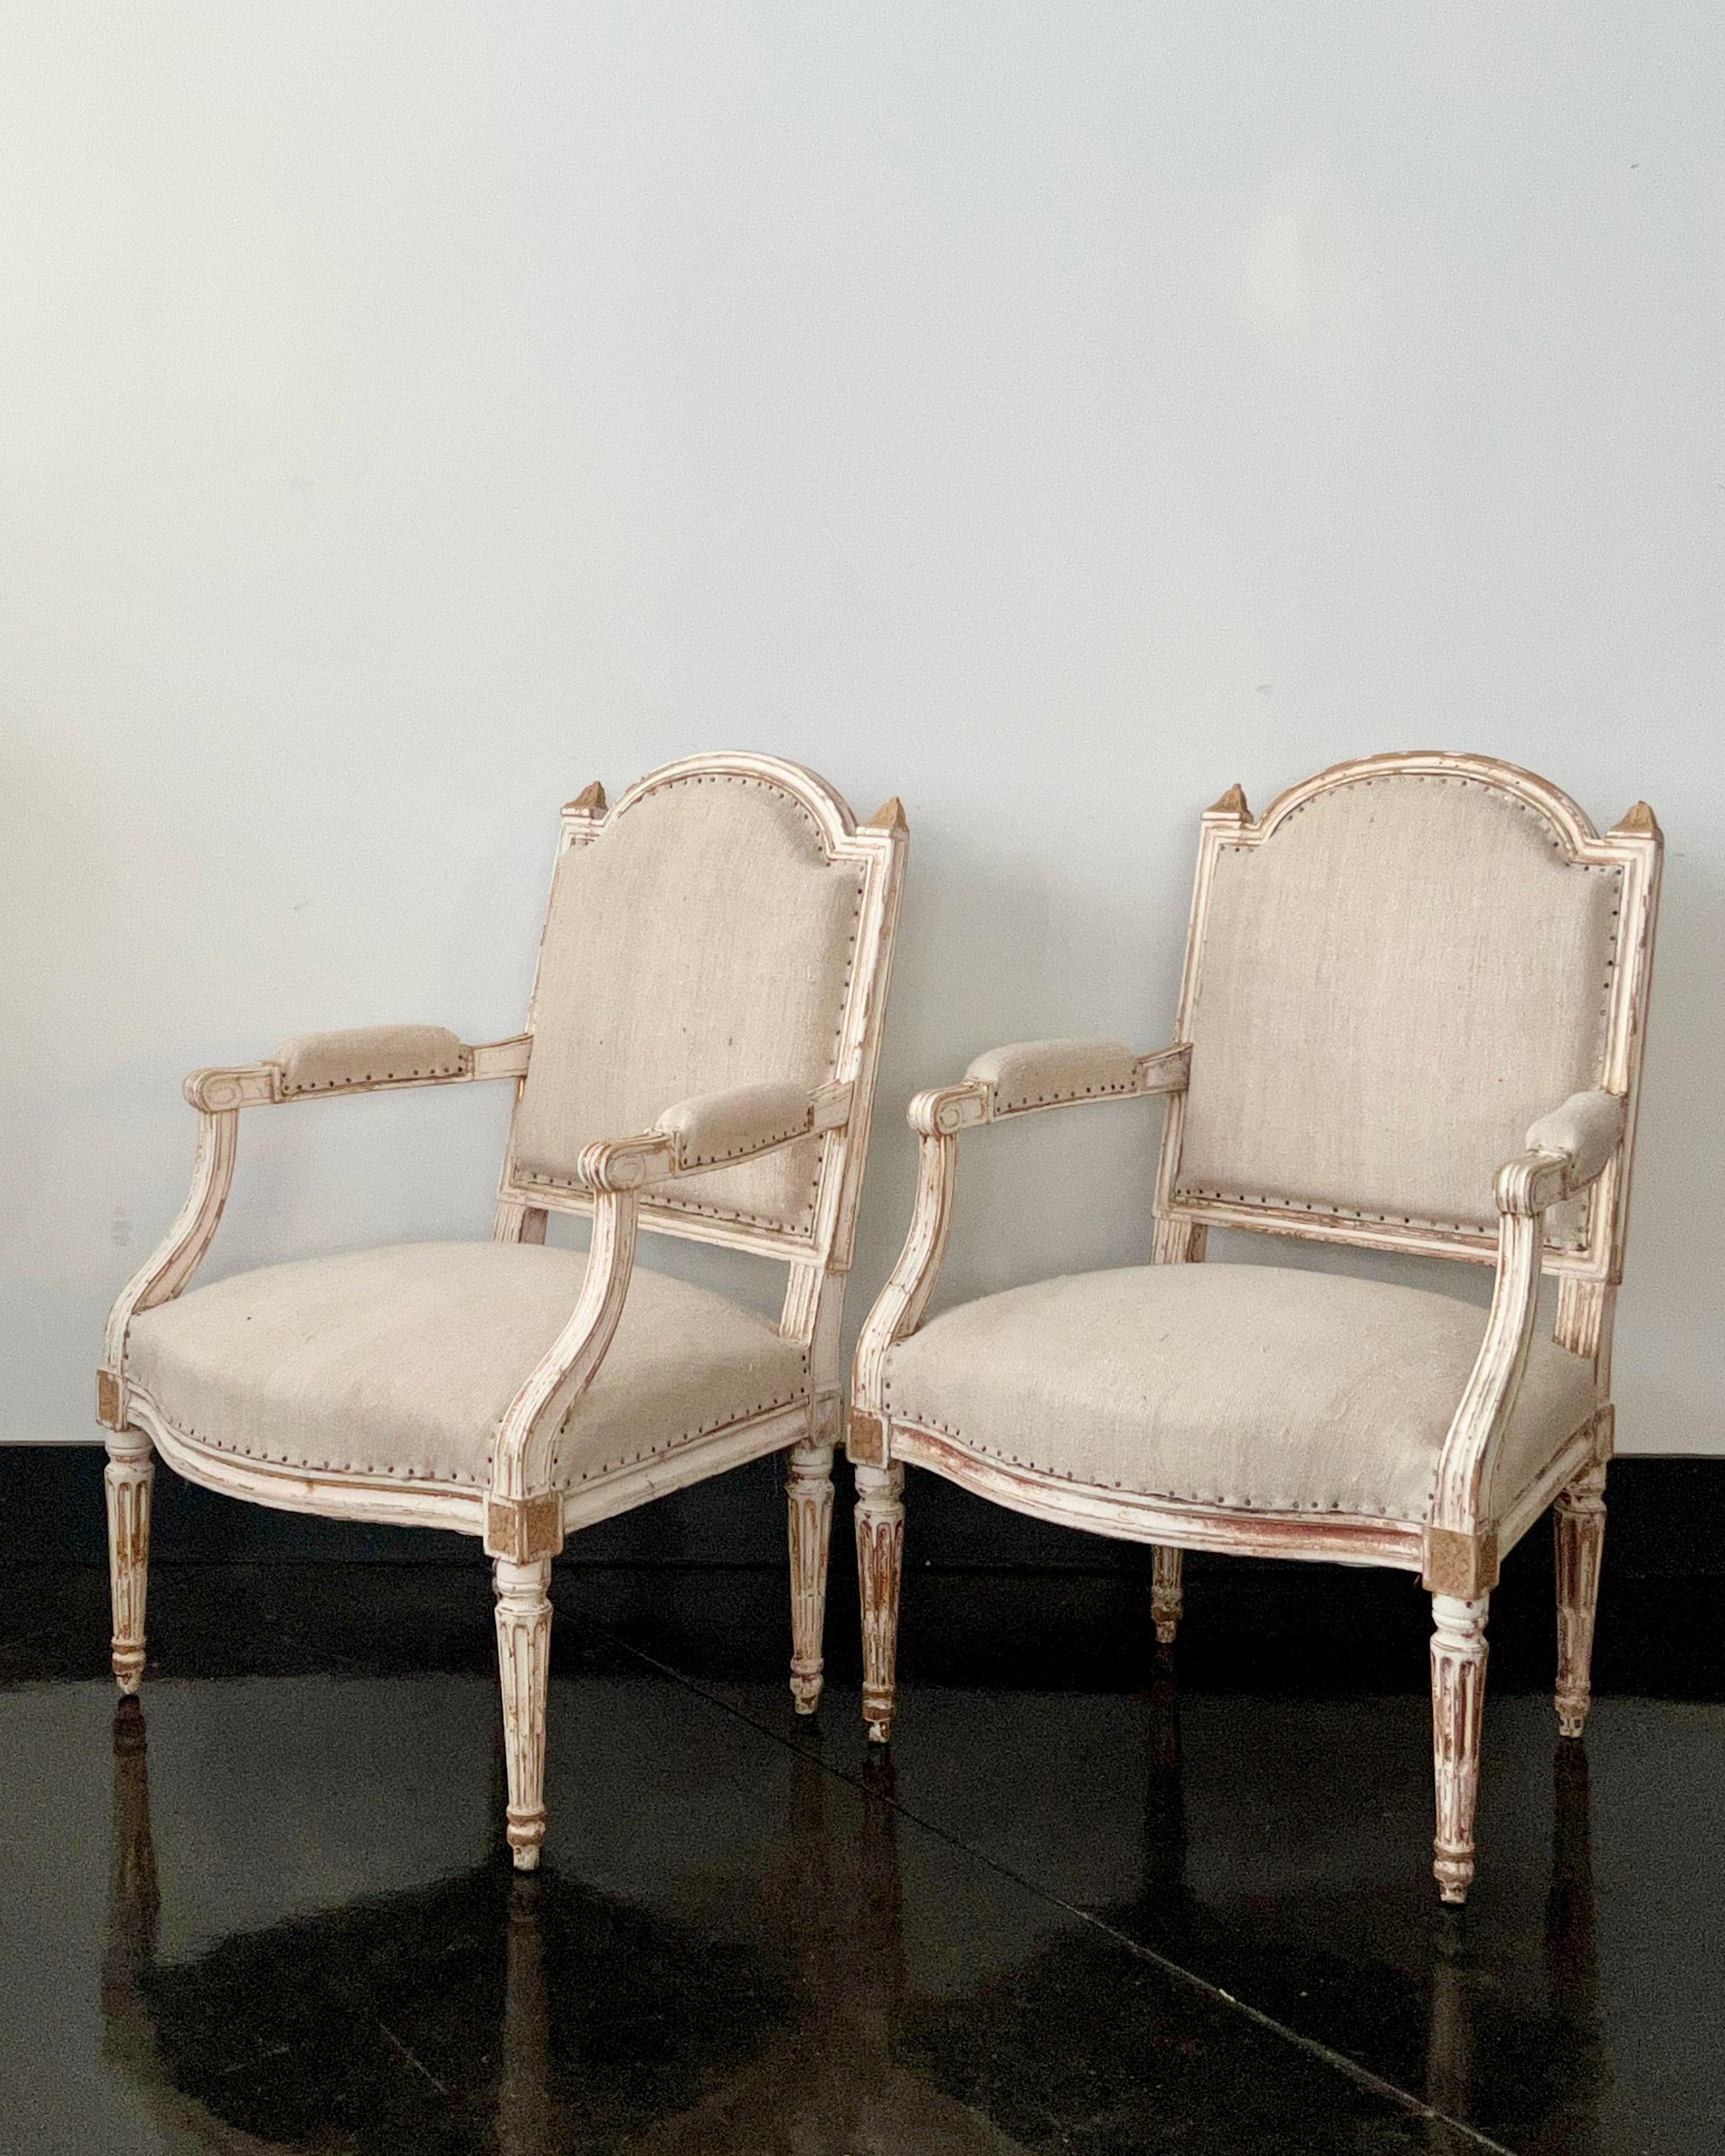 Paire de fauteuils français peints de style Louis XVI en bois massif sculpté, reposant sur quatre pieds fuselés cannelés accentués par des rosettes sculptées sur les joints - montrant par endroits des fragments de bois doré d'origine.
Tapissé de